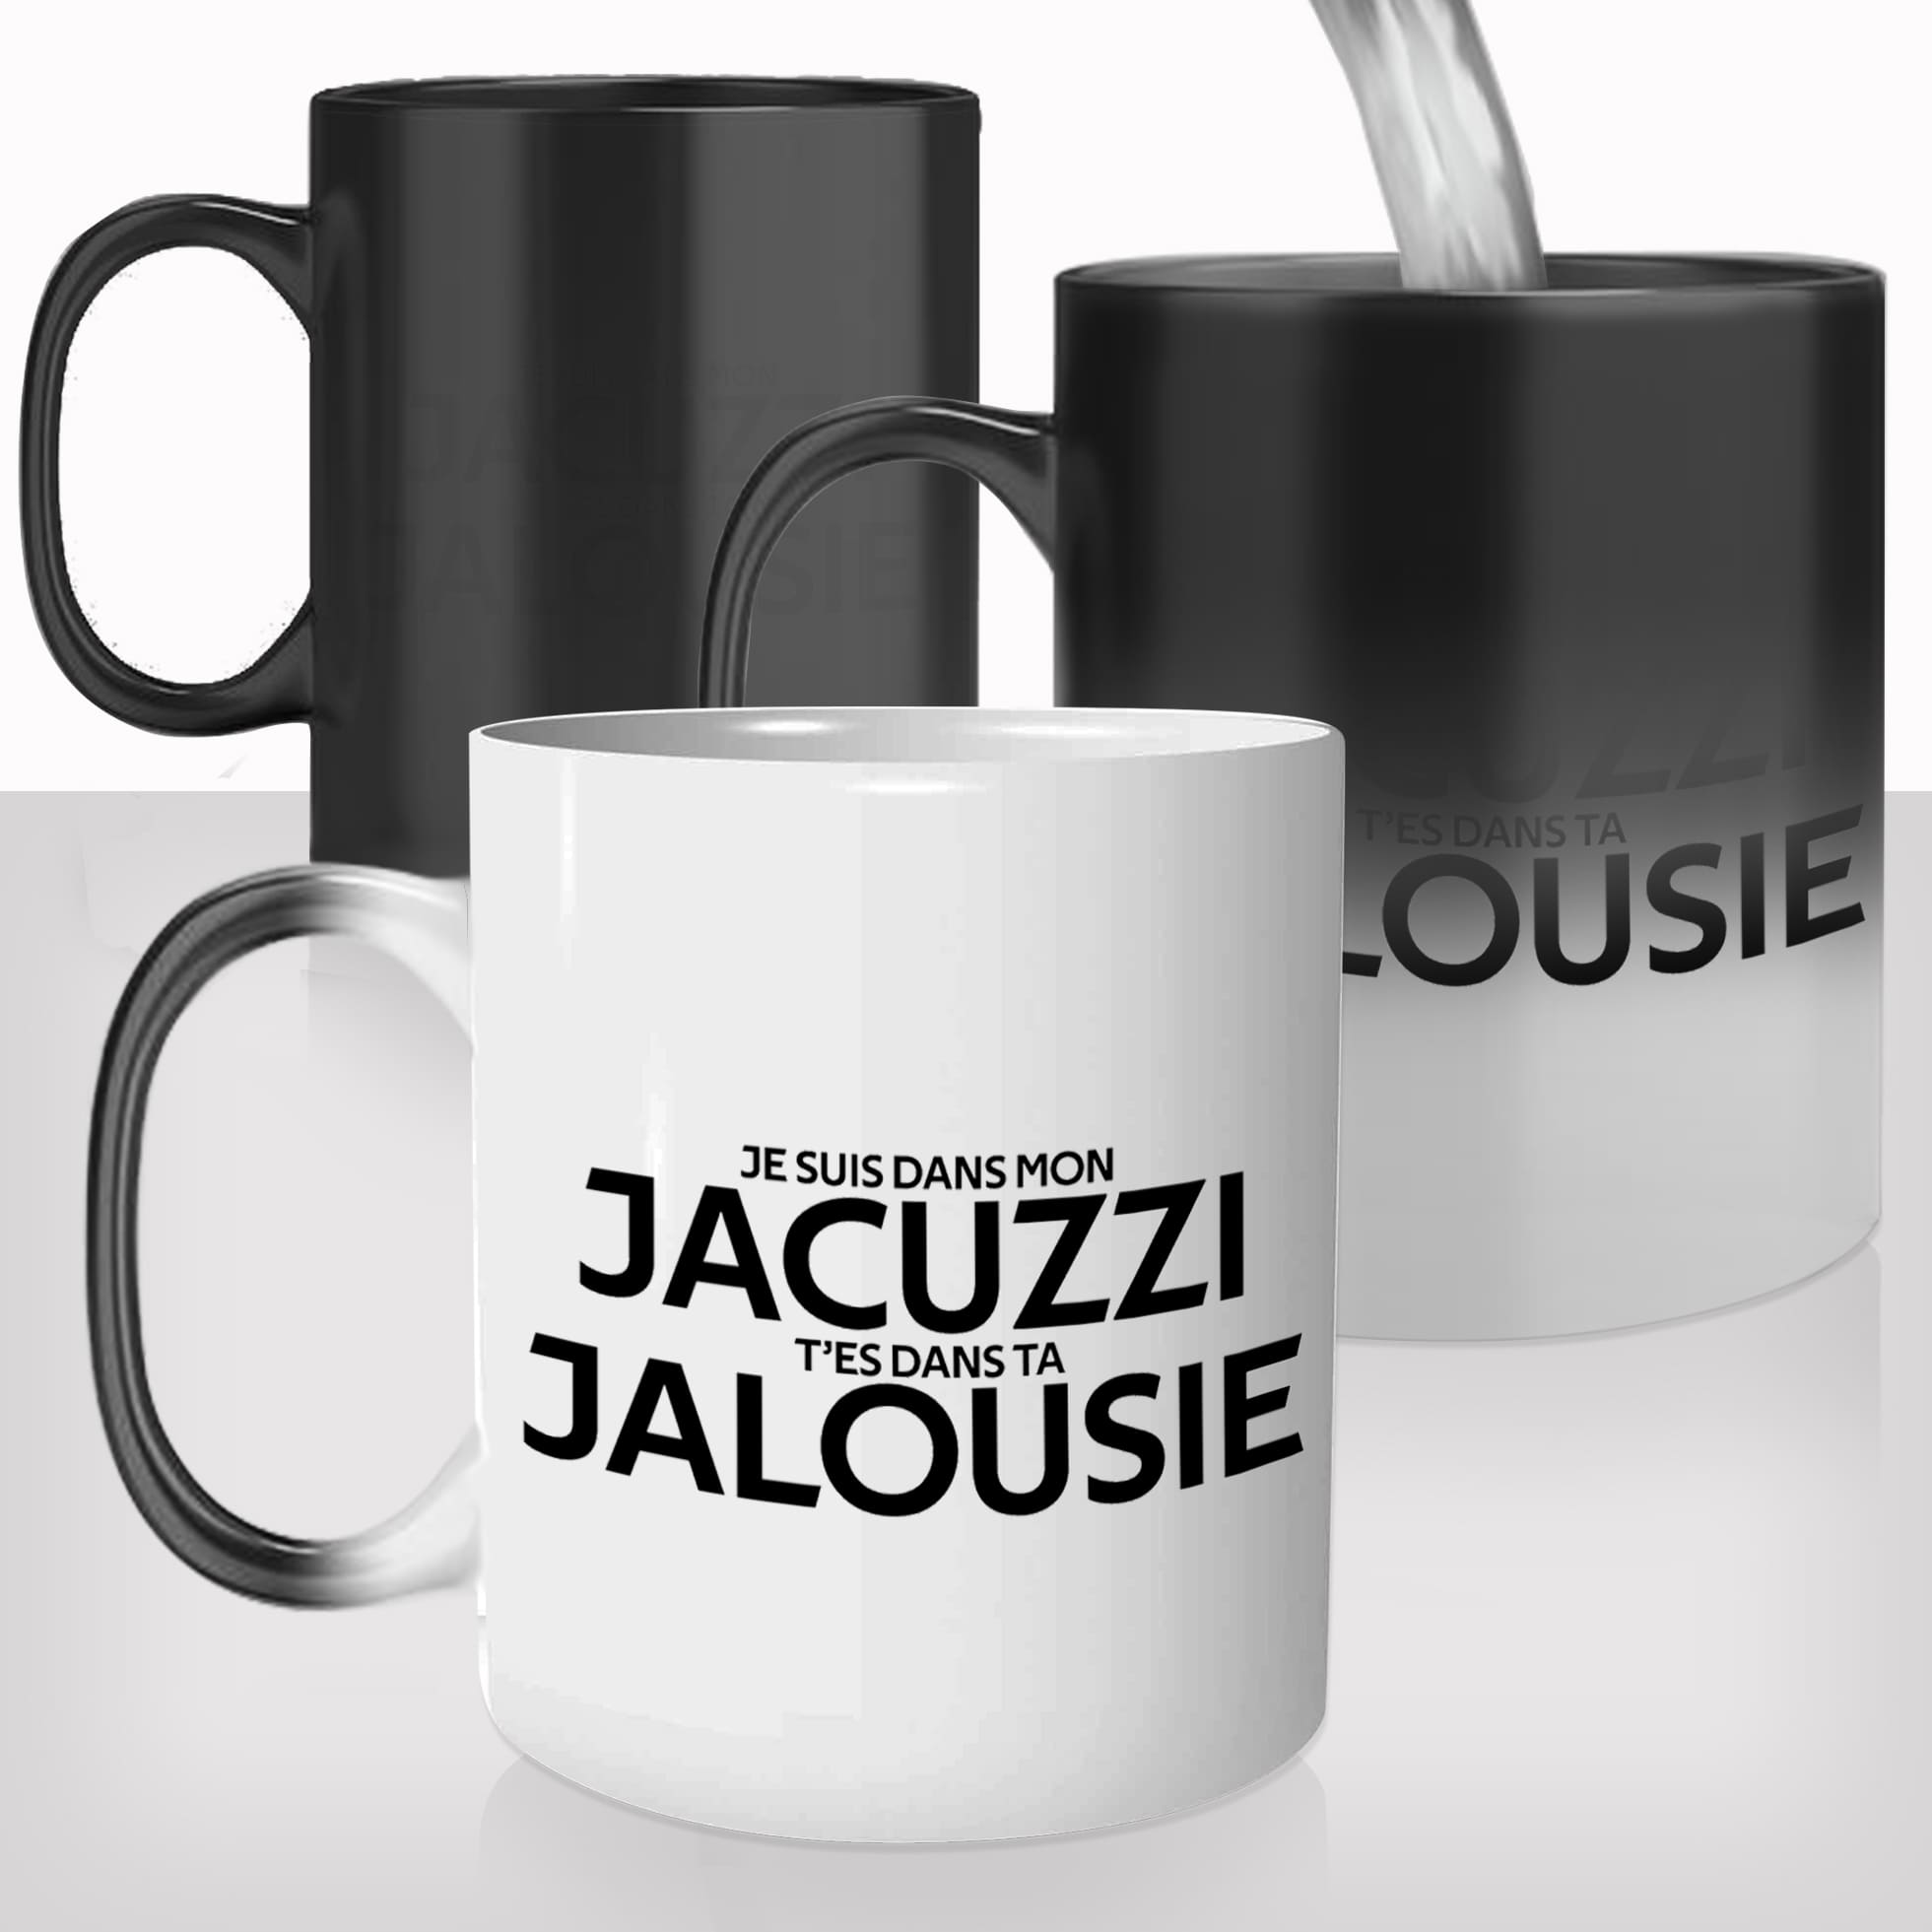 mug-magique-tasse-magic-thermo-reactif-chauffant-paroles-de-chanson-citation-jul-jacuzzi-jalousie-humour-offrir-cadeau-original-fun